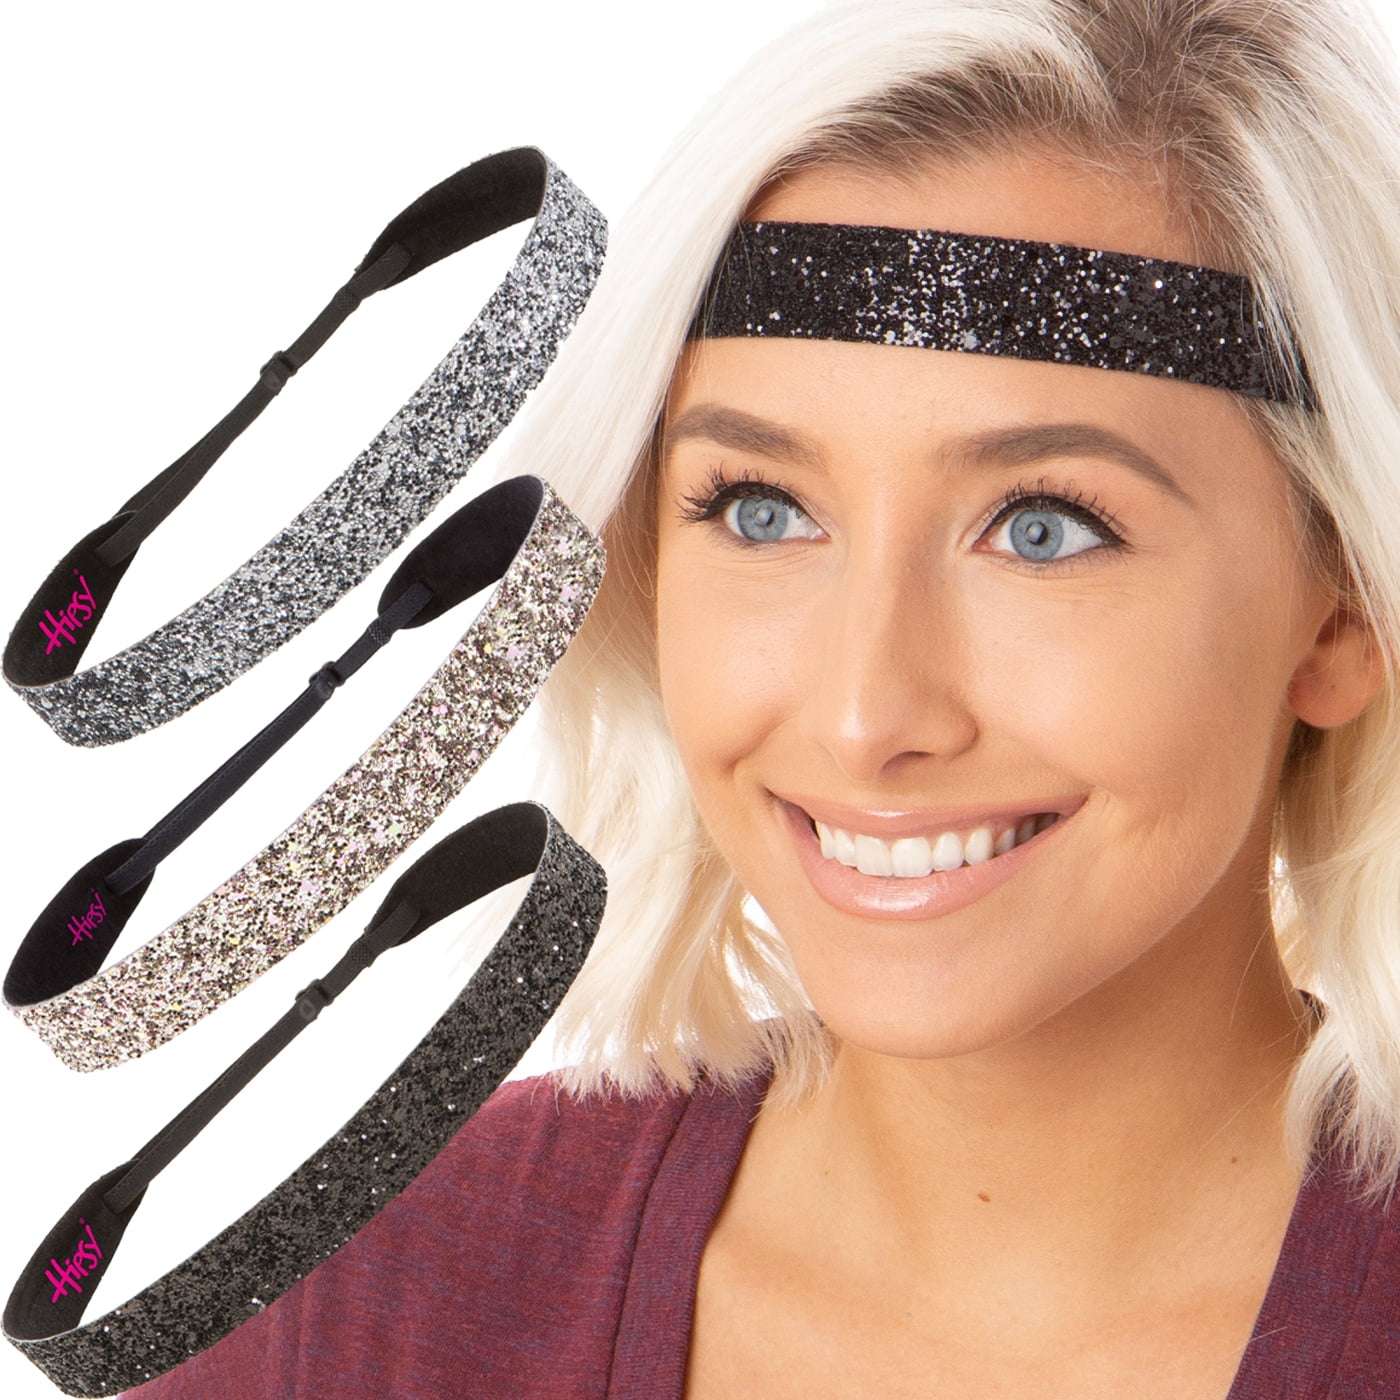 Hipsy Adjustable NO SLIP Cute Sports Running Headbands for Women & Girls 5 Pack 